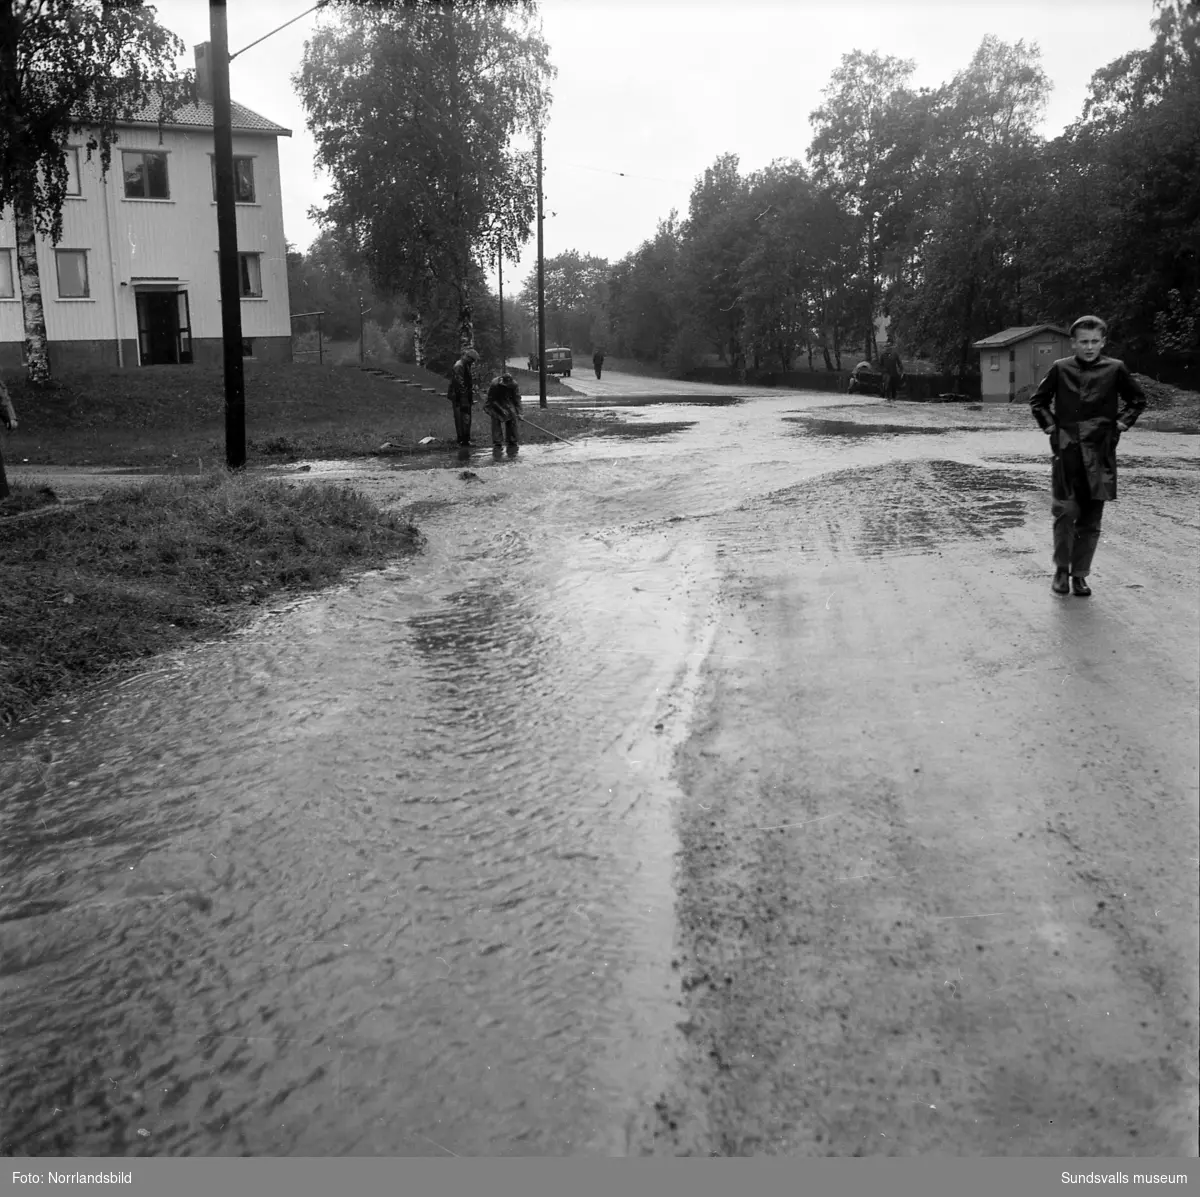 Översvämningar i Sundsvall, de flesta bilderna från Björneborgsgatan 11-24 samt Grevenbäcken som svämmat över. Wahlströms självköp och Städernas Vakt AB har råkat illa ut och källarvåningarna i flerfamiljshusen är drabbade. Vid Aluminiumkompaniet har en översvämmad bäck skurit av landsvägen och bildat ett vattenfall. På en av bilderna ses fyra män leta efter en avloppstrumma i Grevebäcken stånde dels i en båt och dels på en omkullvräkt arbetarkur. Det är förman Jonsson, E. Forsberg, G. Persson och A. Söderman.